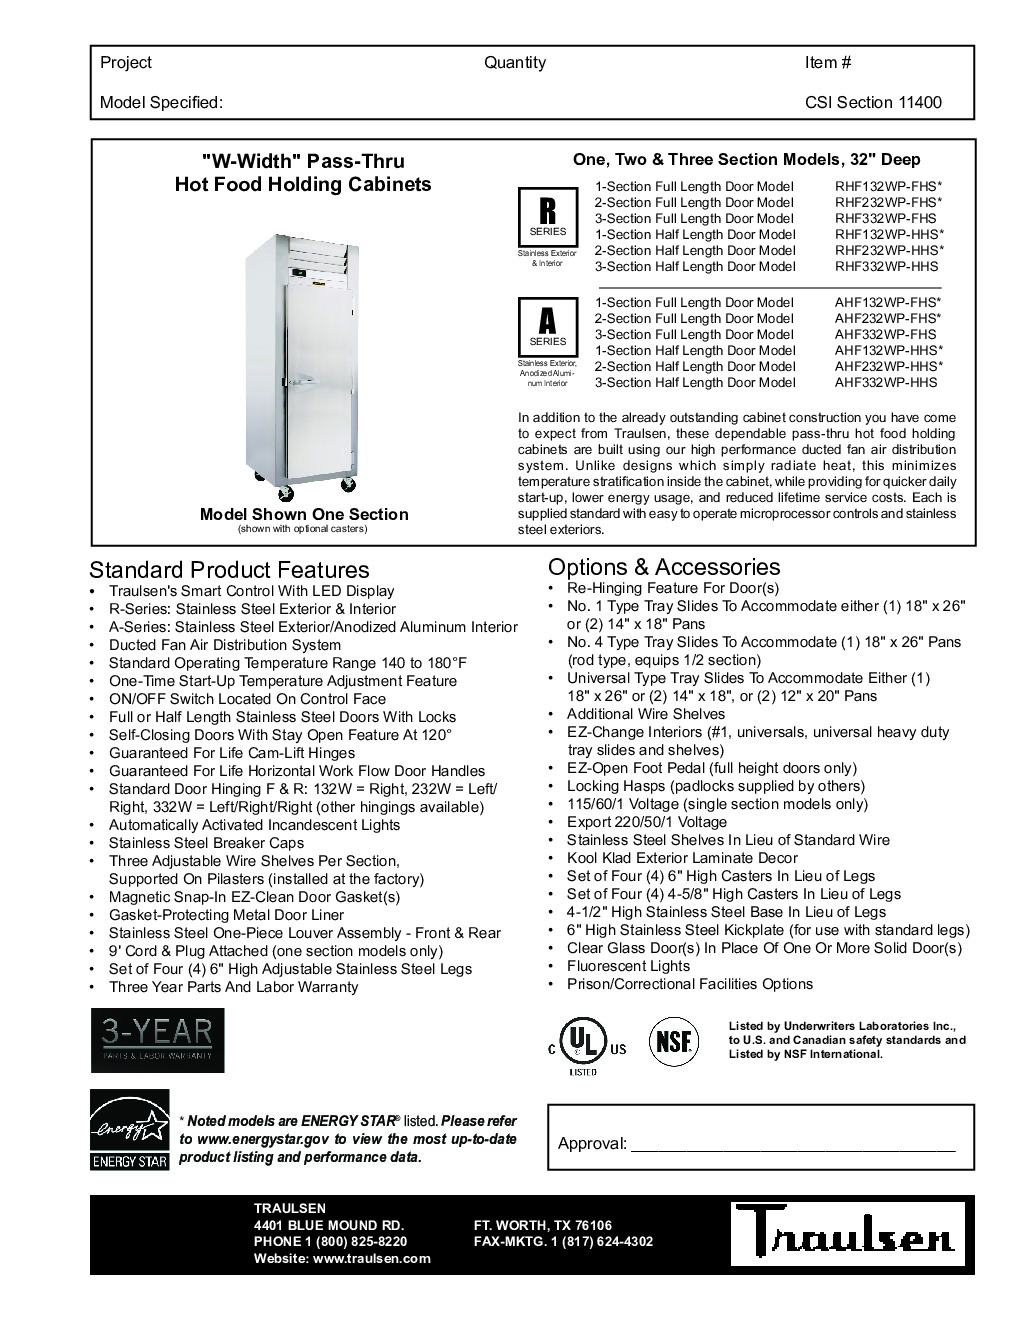 Traulsen RHF332WP-HHS Pass-Thru Heated Cabinet